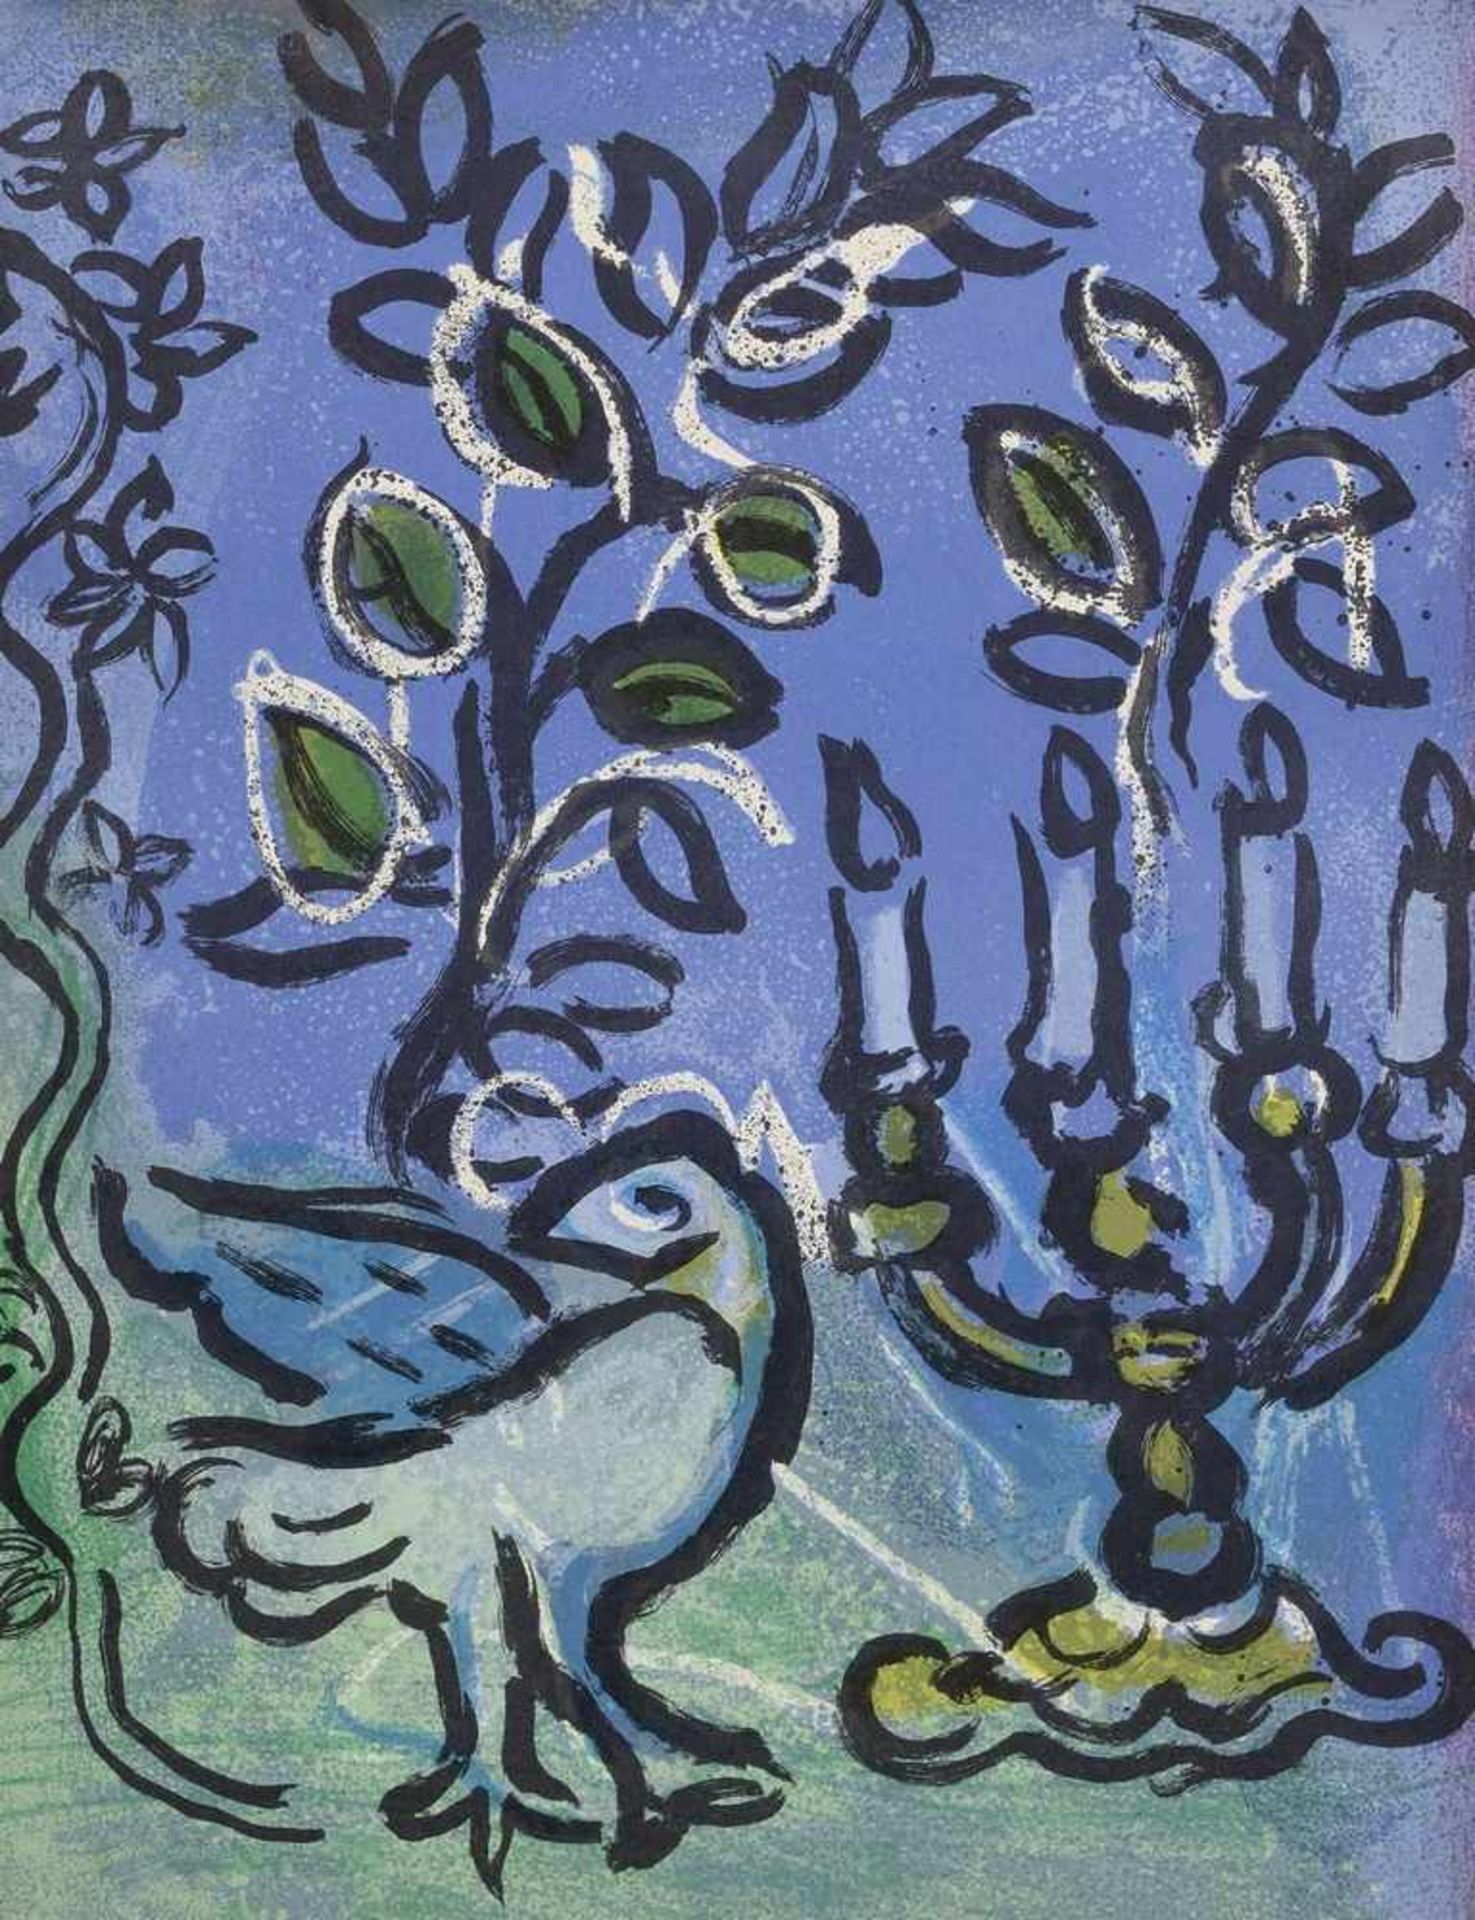 Chagall, Marc (1887-1985) "Der Kerzenleuchter" 1962, Farblithographie, WVZ Mourlot 266, 31x24cm (m.